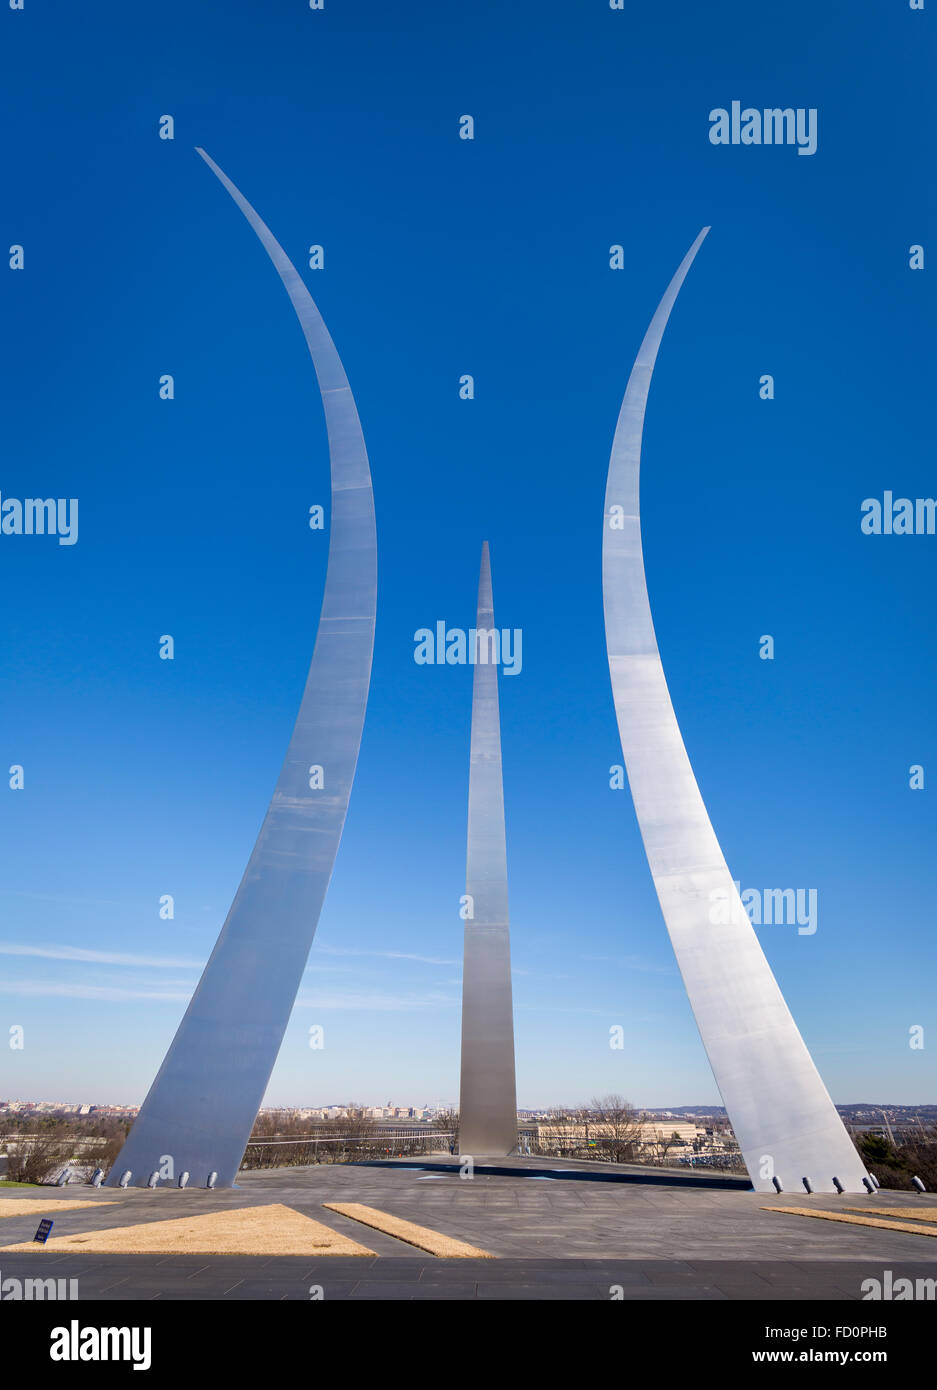 ARLINGTON, VIRGINIA, EE.UU. - Memorial de la Fuerza Aérea de los Estados Unidos. Foto de stock